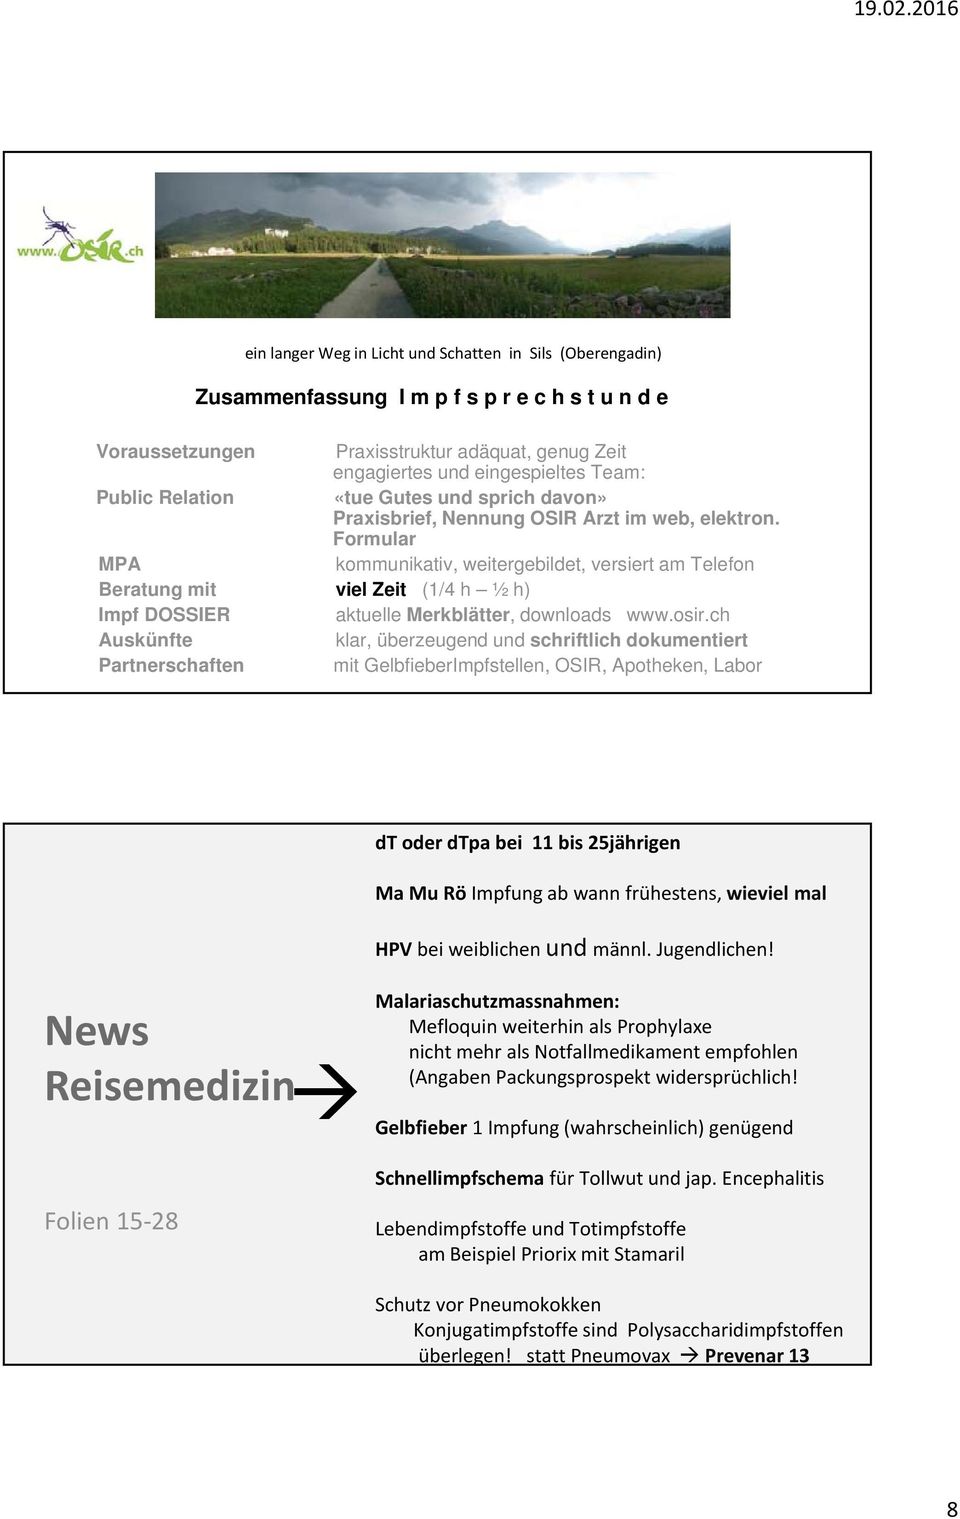 Formular MPA kommunikativ, weitergebildet, versiert am Telefon Beratung mit viel Zeit (1/4 h ½ h) Impf DOSSIER aktuelle Merkblätter, downloads www.osir.